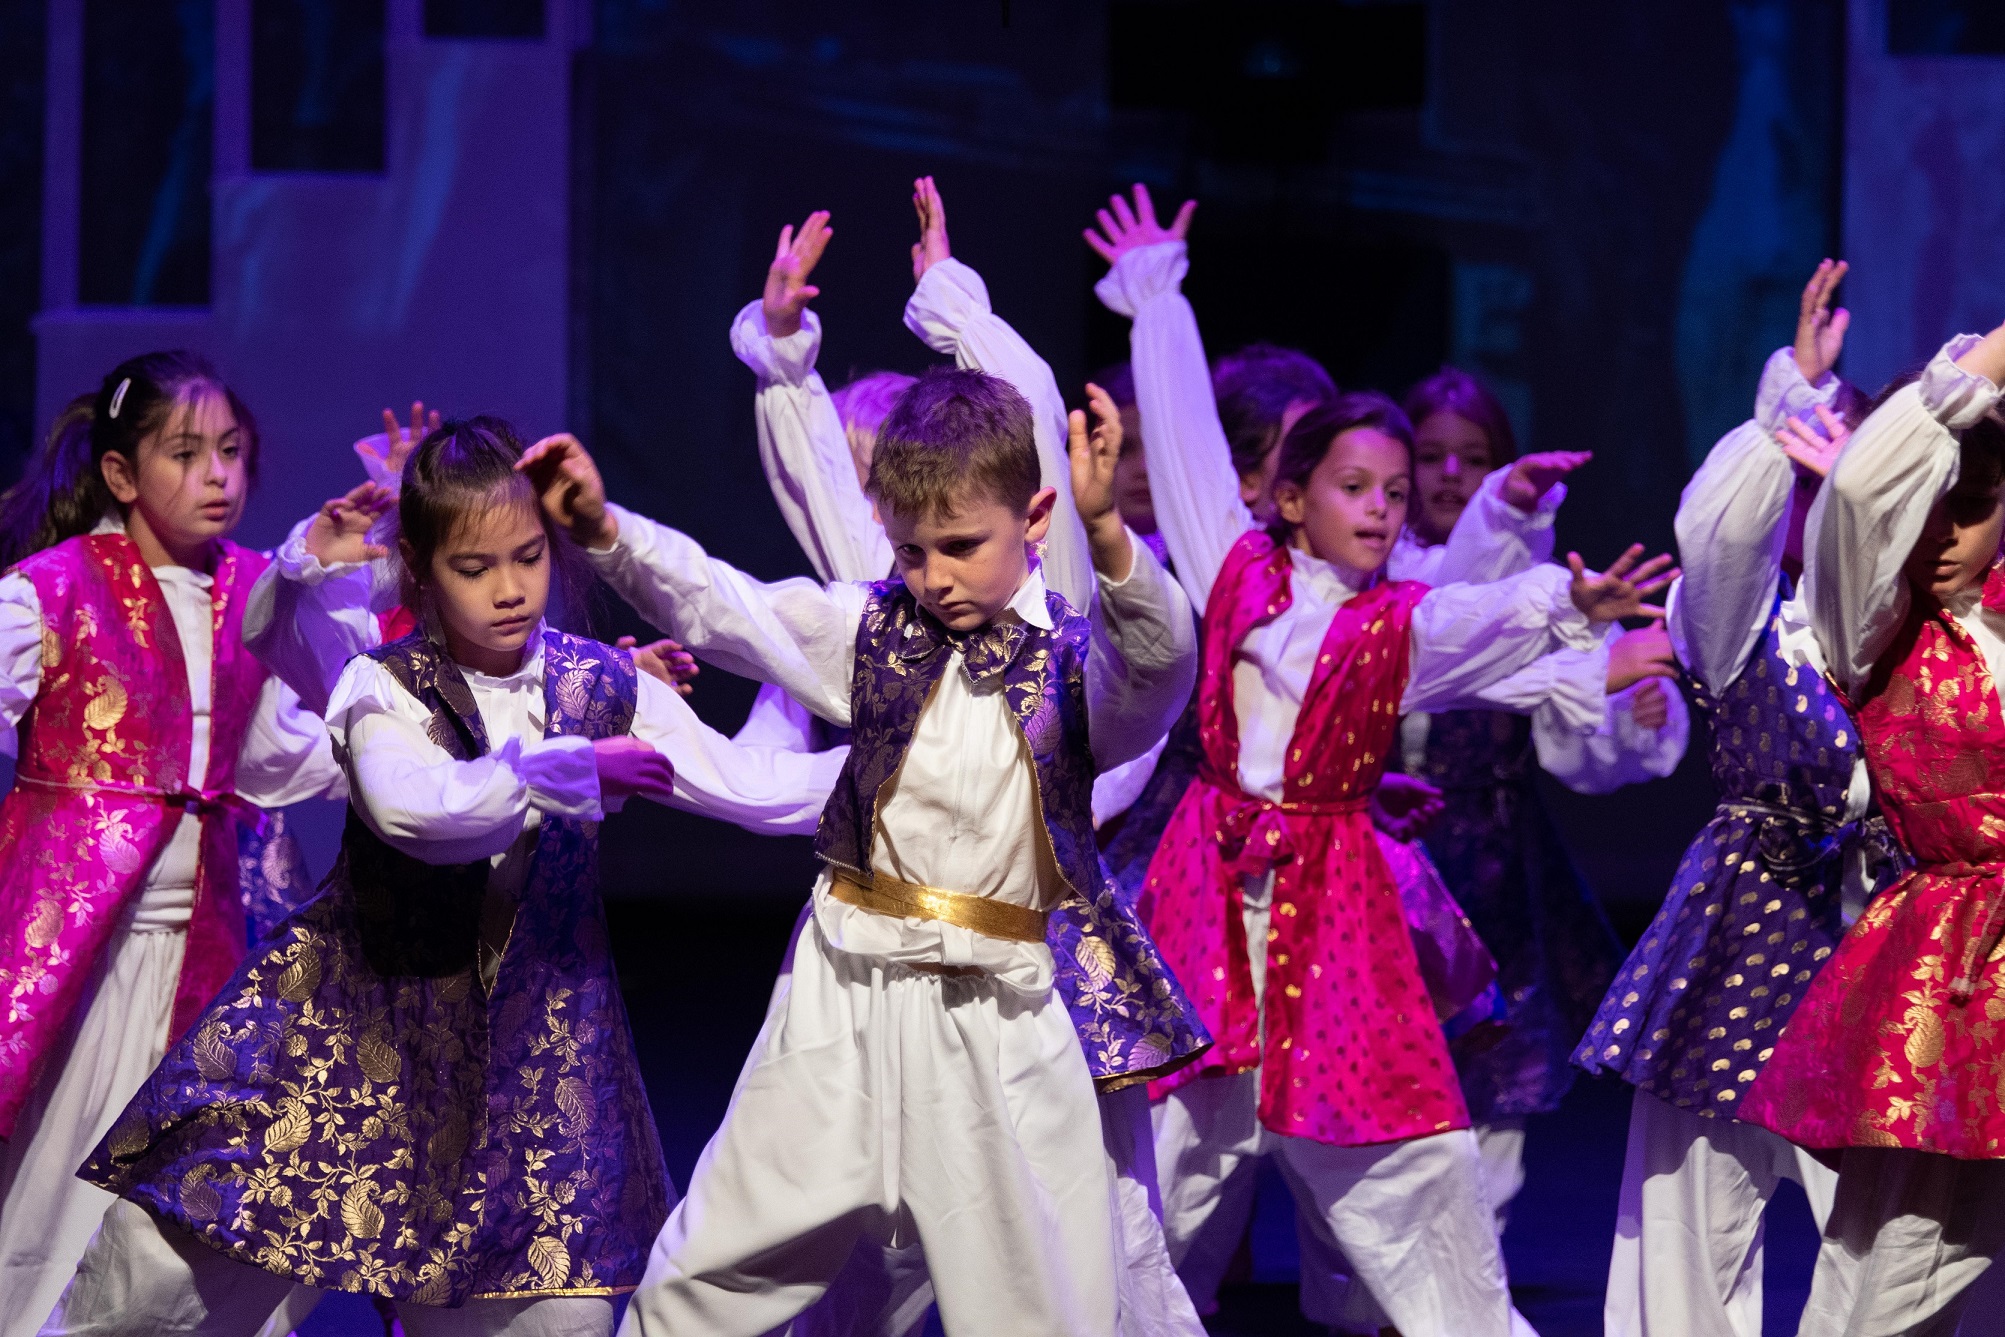 أول عمل مسرحي مدرسي ضخم باللغة العربية في أبوظبي  بمشاركة طلاب من مختلف الجنسيات